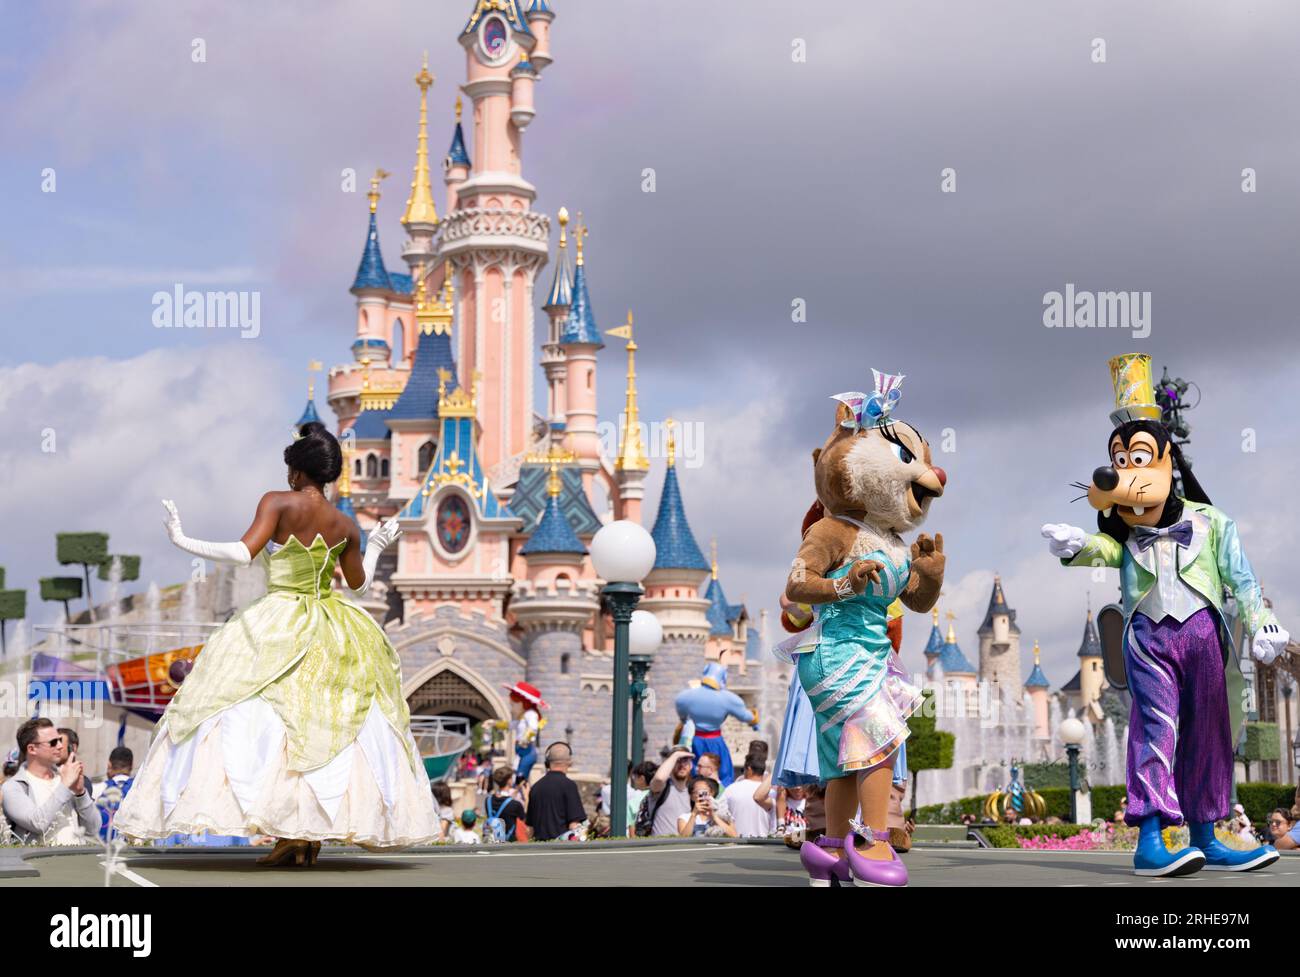 Disneyland Paris; Disney-Figuren vor dem Disneyland Castle tanzen während der Disneyland Parade; Prinzessin Tiana, Clarice und Goofy; Frankreich Stockfoto